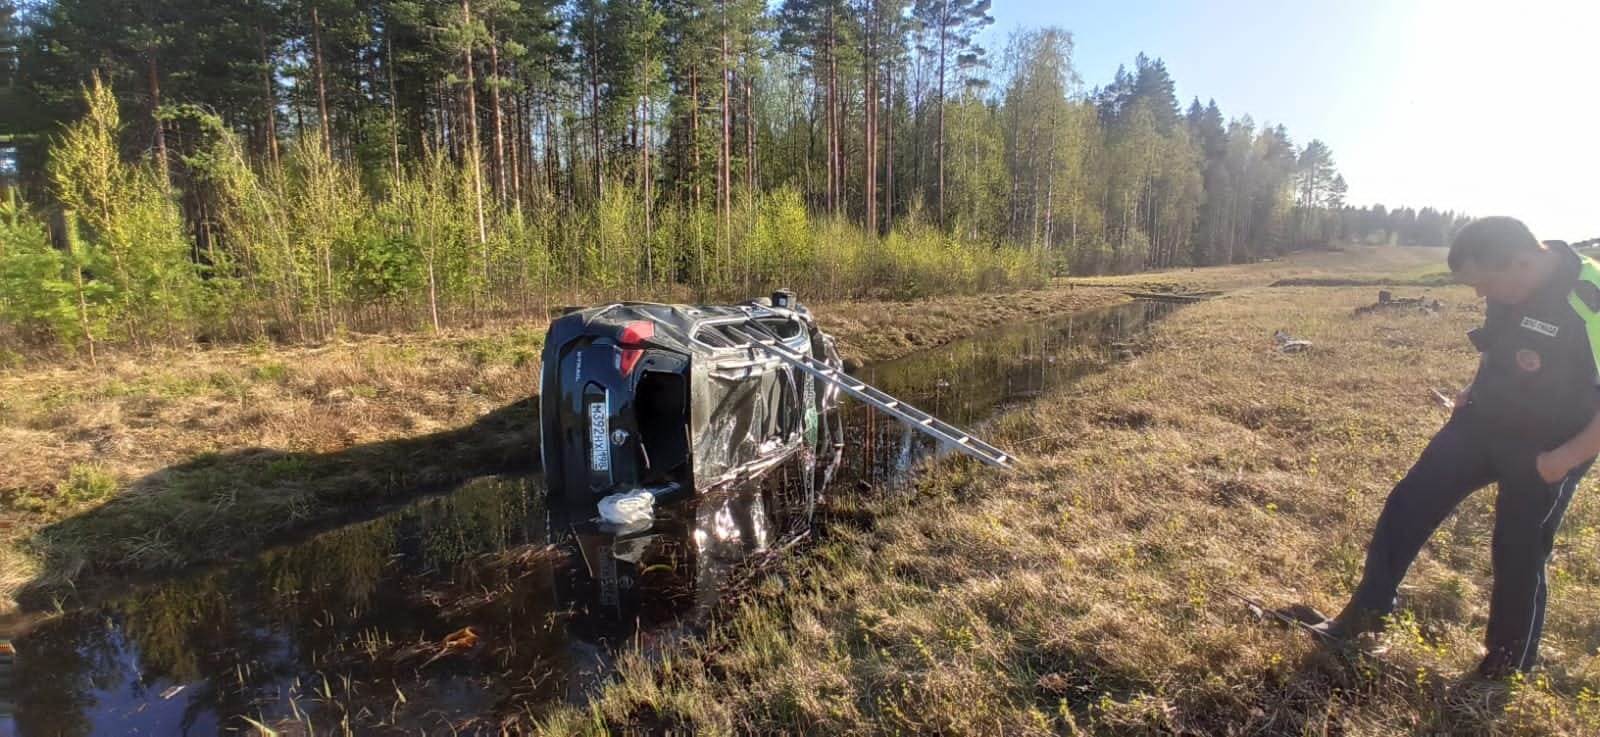 Машина в хлам: автомобиль опрокинулся в кювет на трассе в Карелии (ФОТО)